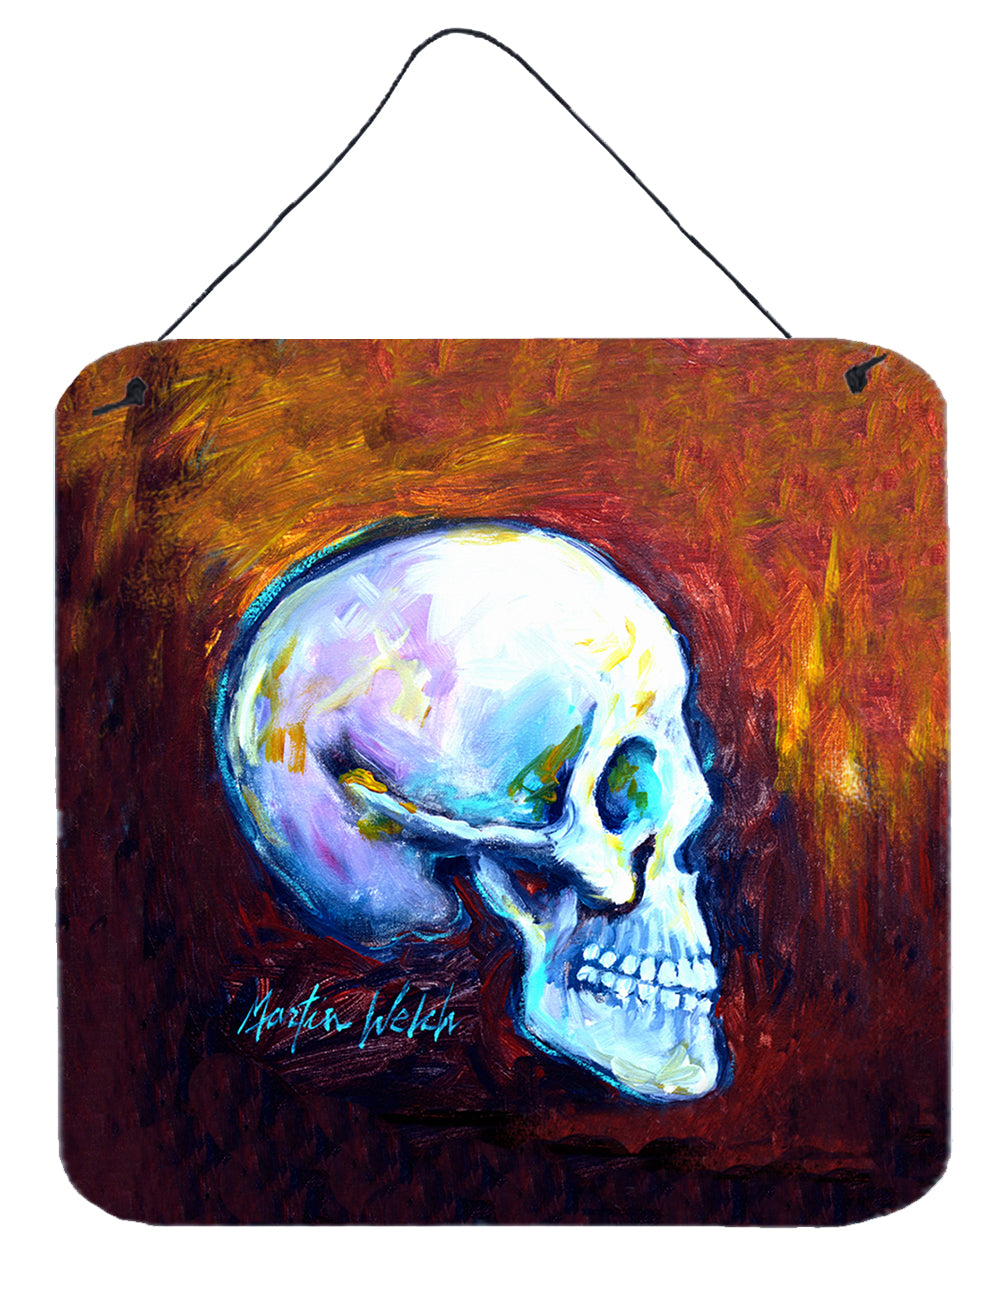 Buy this Skeleton My Best Side Wall or Door Hanging Prints